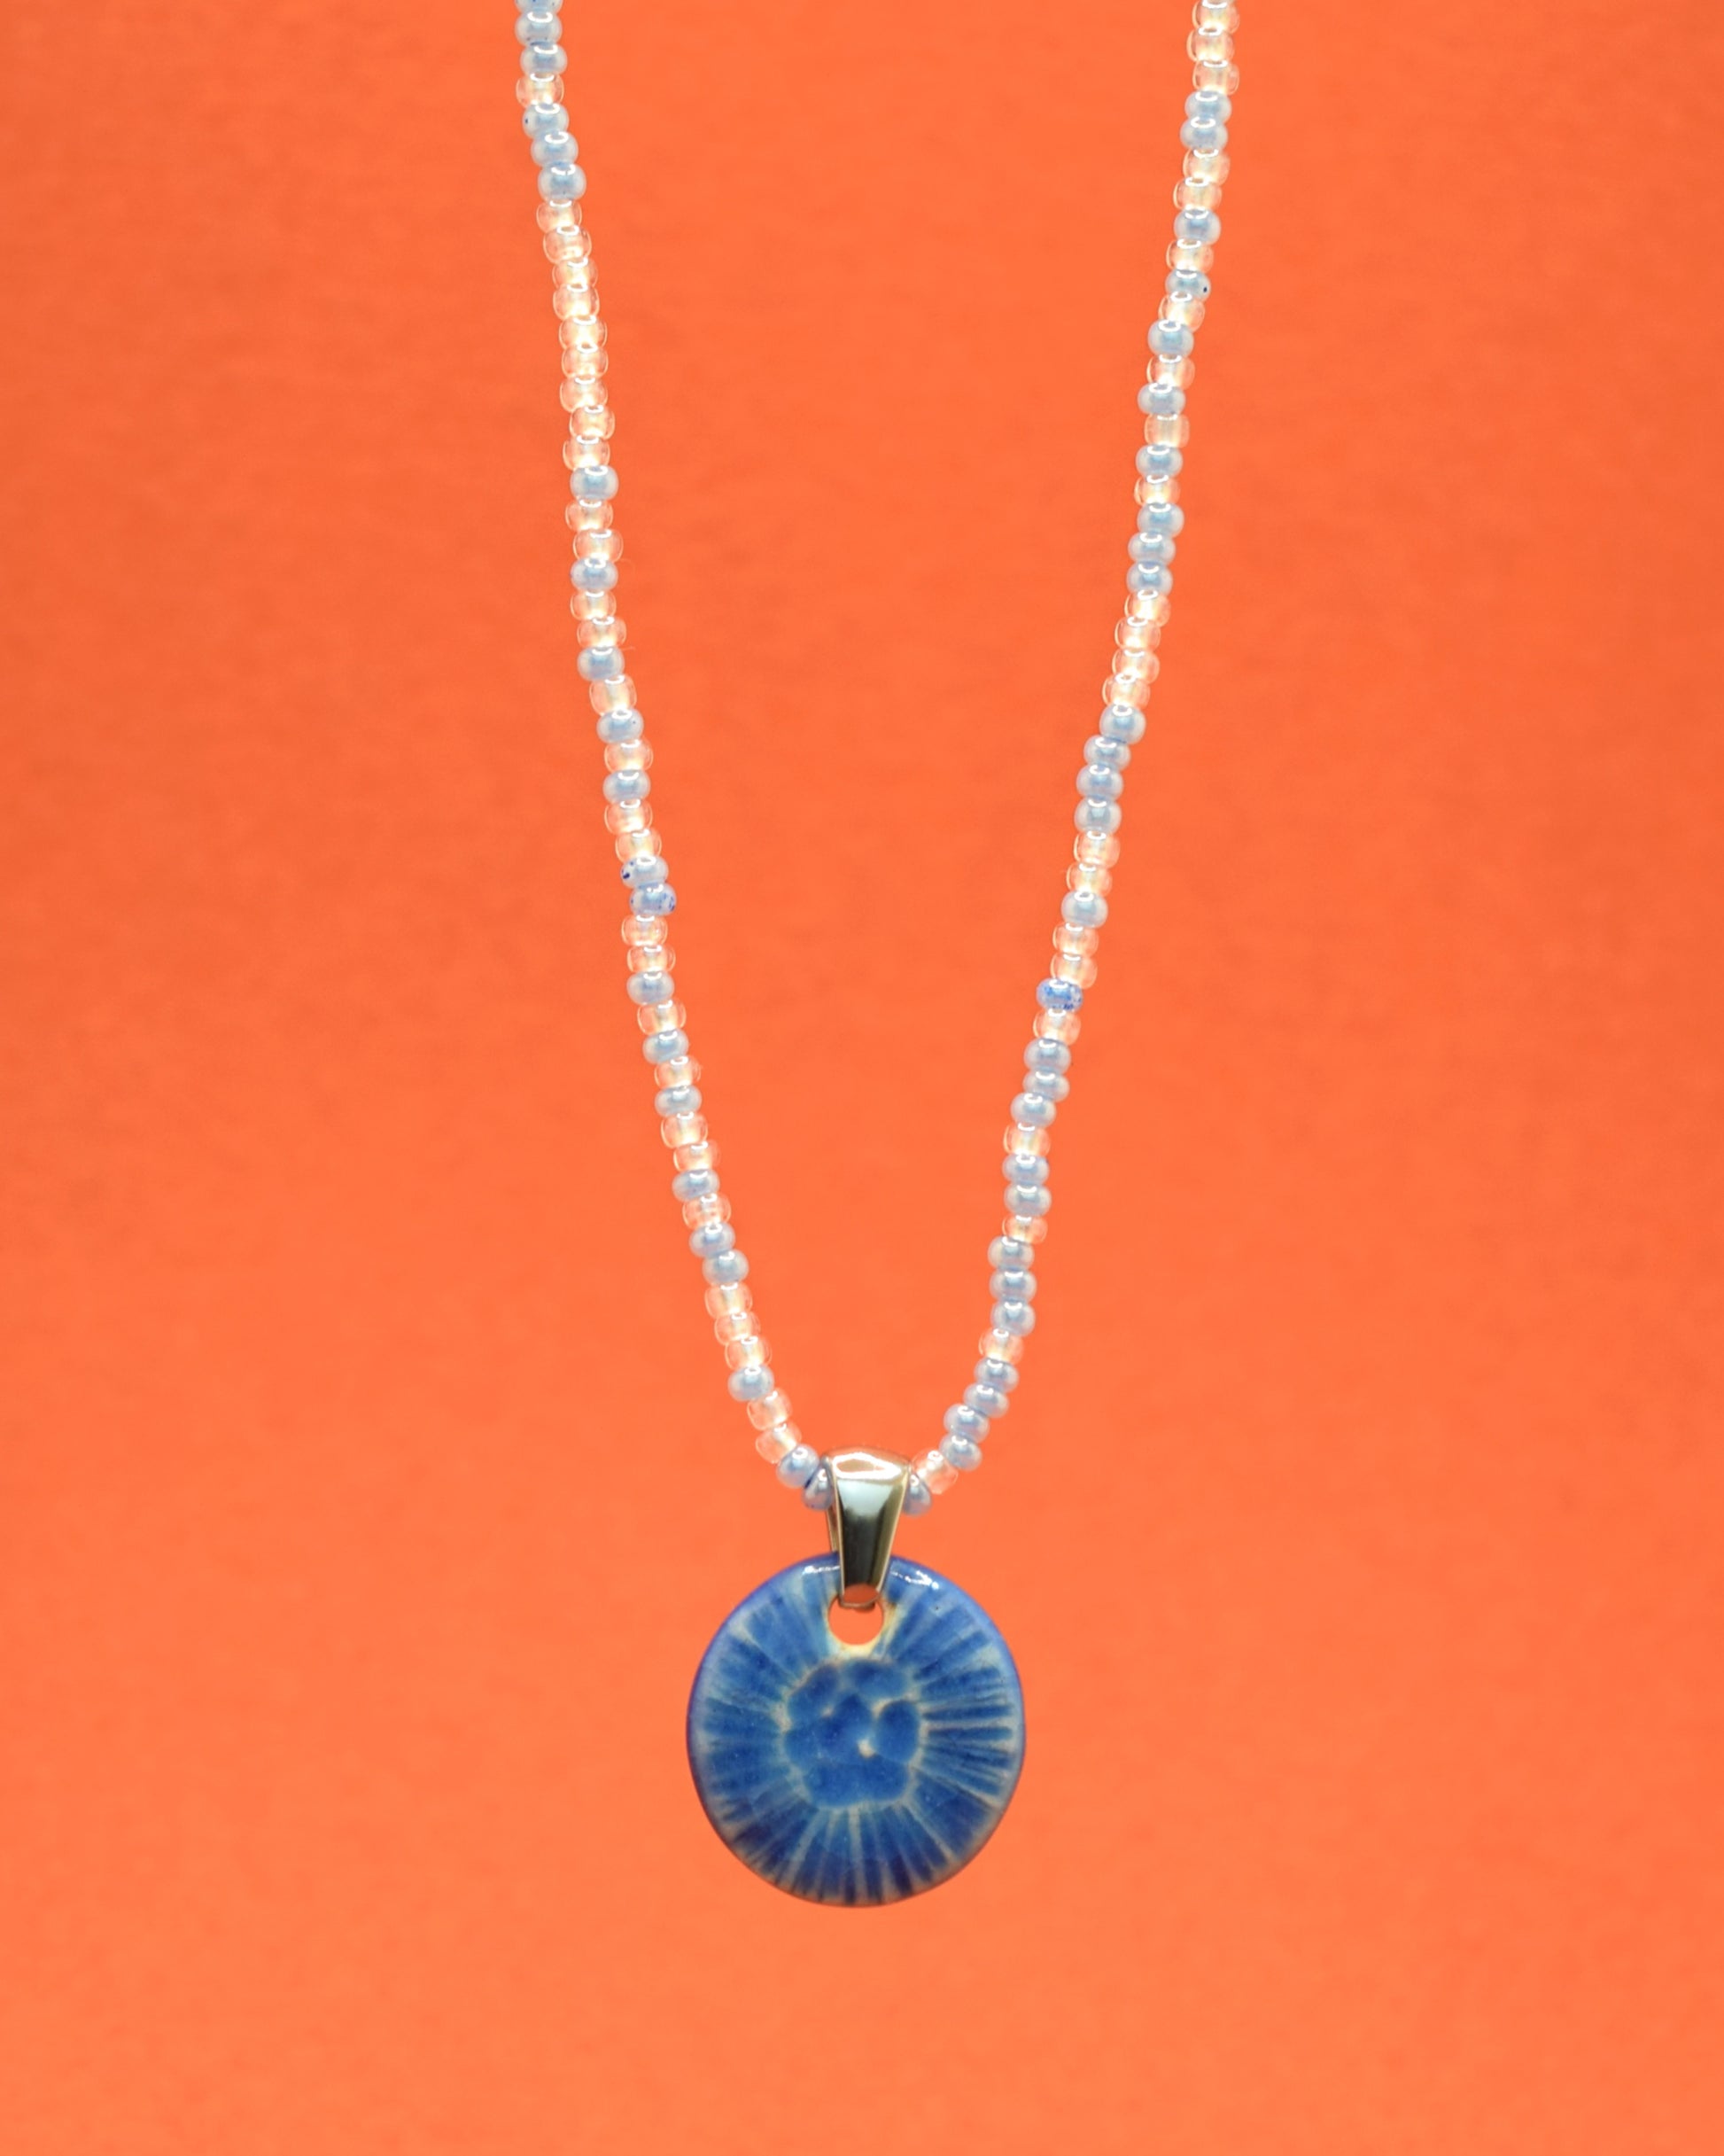 Colar cativante com missangas de vidro em uma mistura suave de tons azul claro, complementado por um elegante pendente de cerâmica azul, inspirado numa delicada flor do mar. Uma fusão encantadora de cores que adiciona um toque único e sofisticado ao seu estilo.